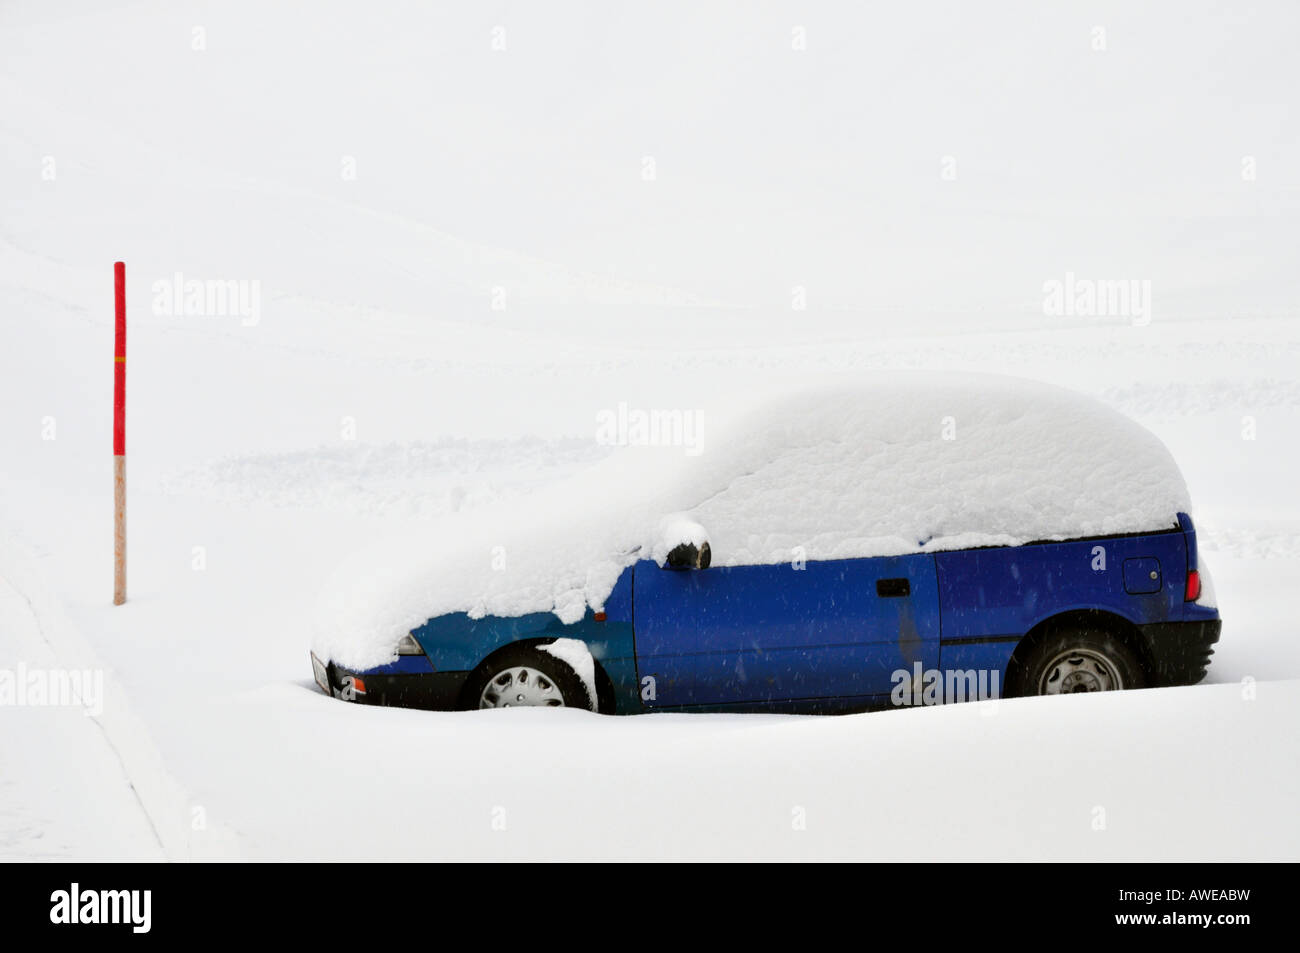 Snow covered car in Kleinwalsertal, Austria, Europe Stock Photo